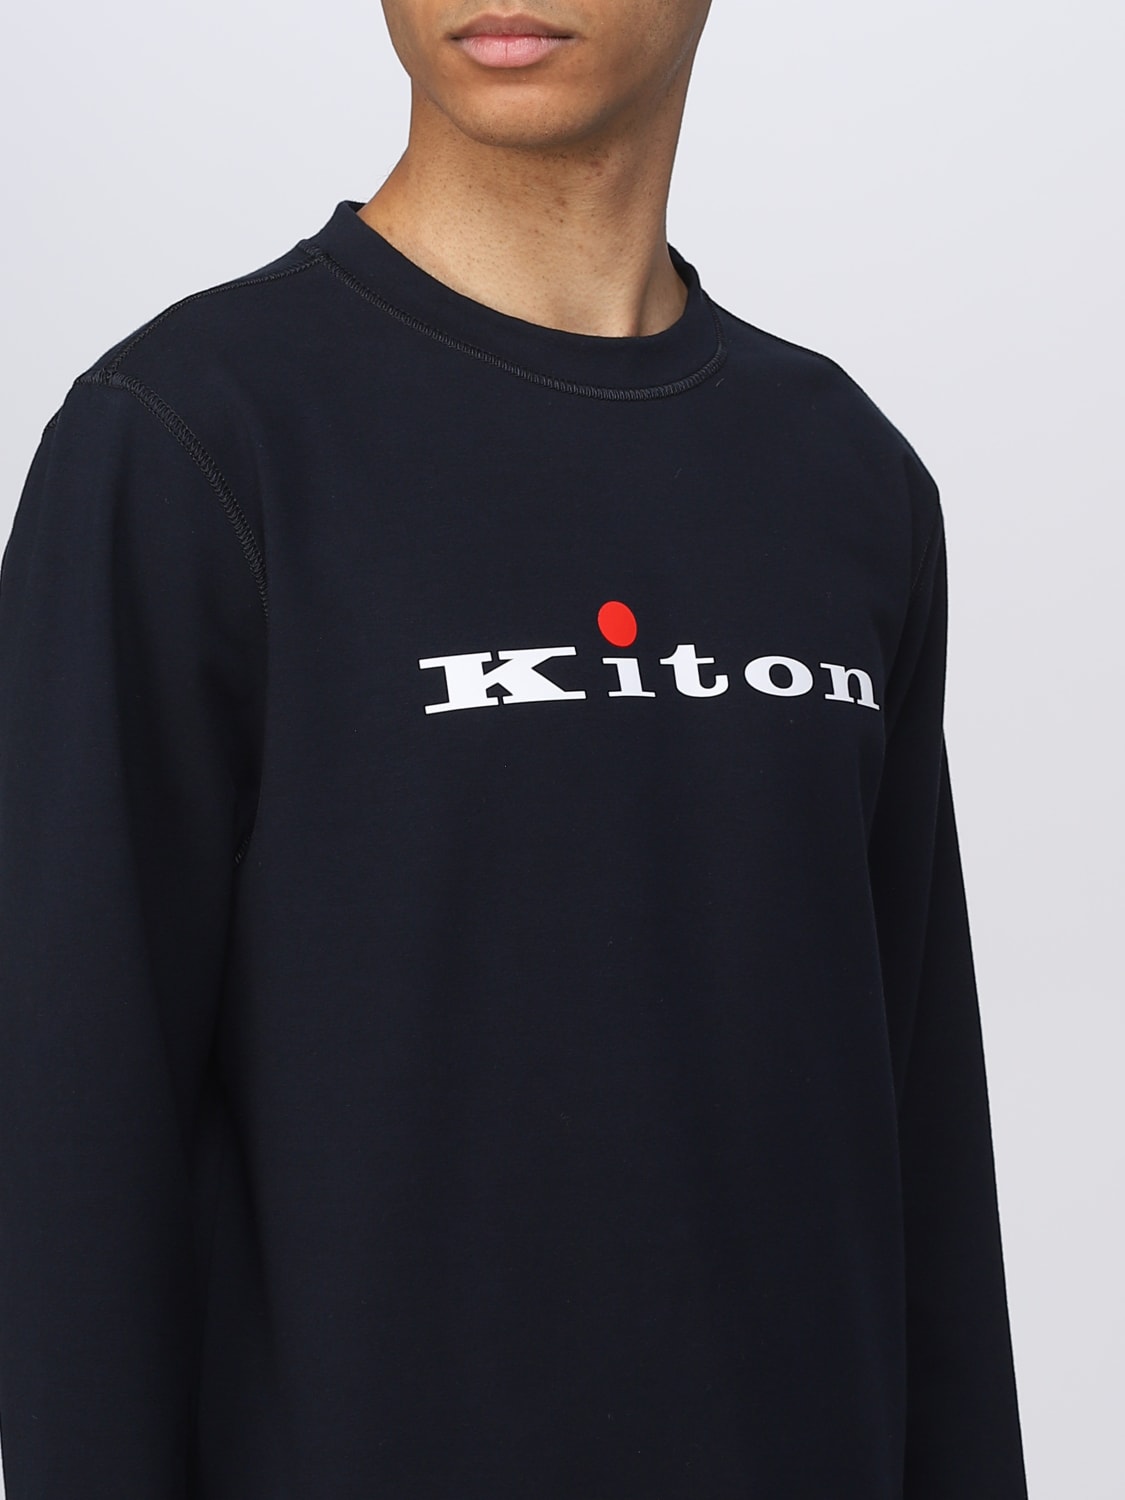 スウェットシャツ Kiton: スウェットシャツ Kiton メンズ ブルー 2